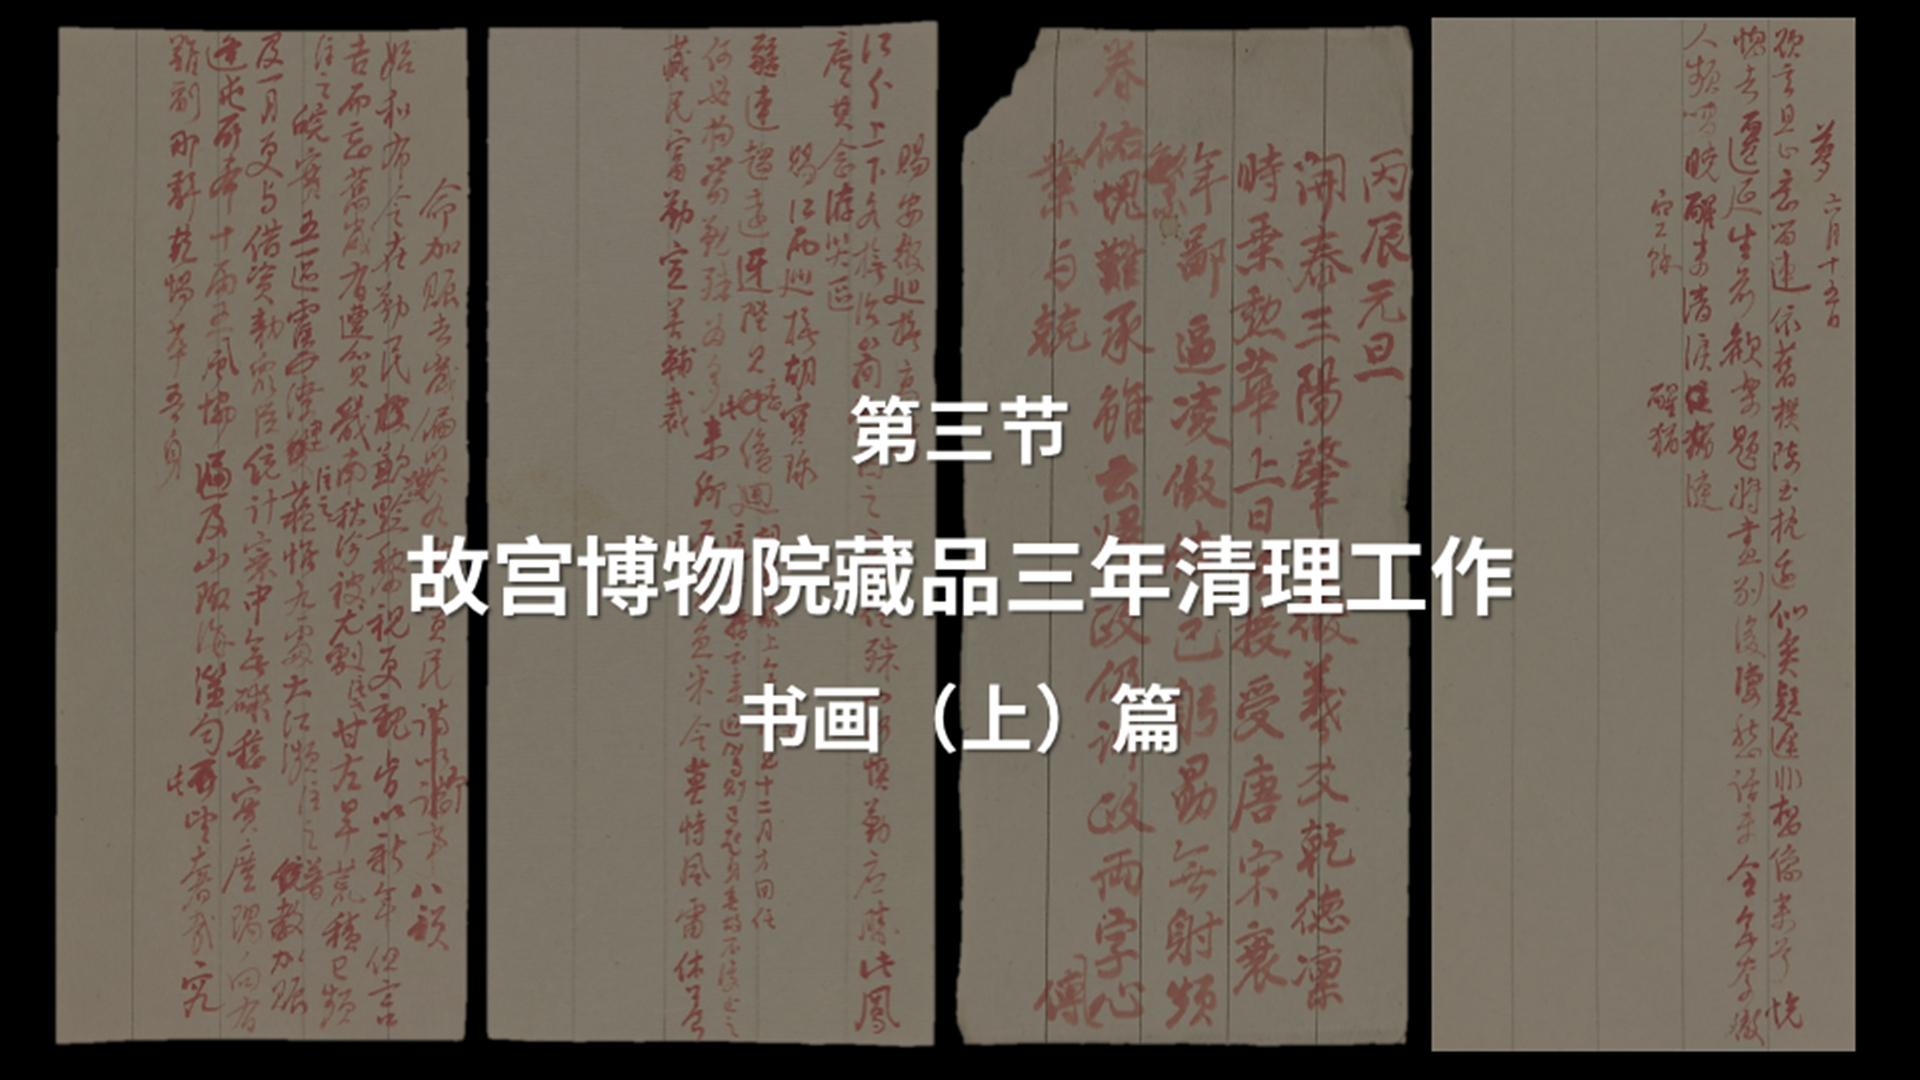 第三节：故宫博物院藏品三年清理工作——书画（上）篇